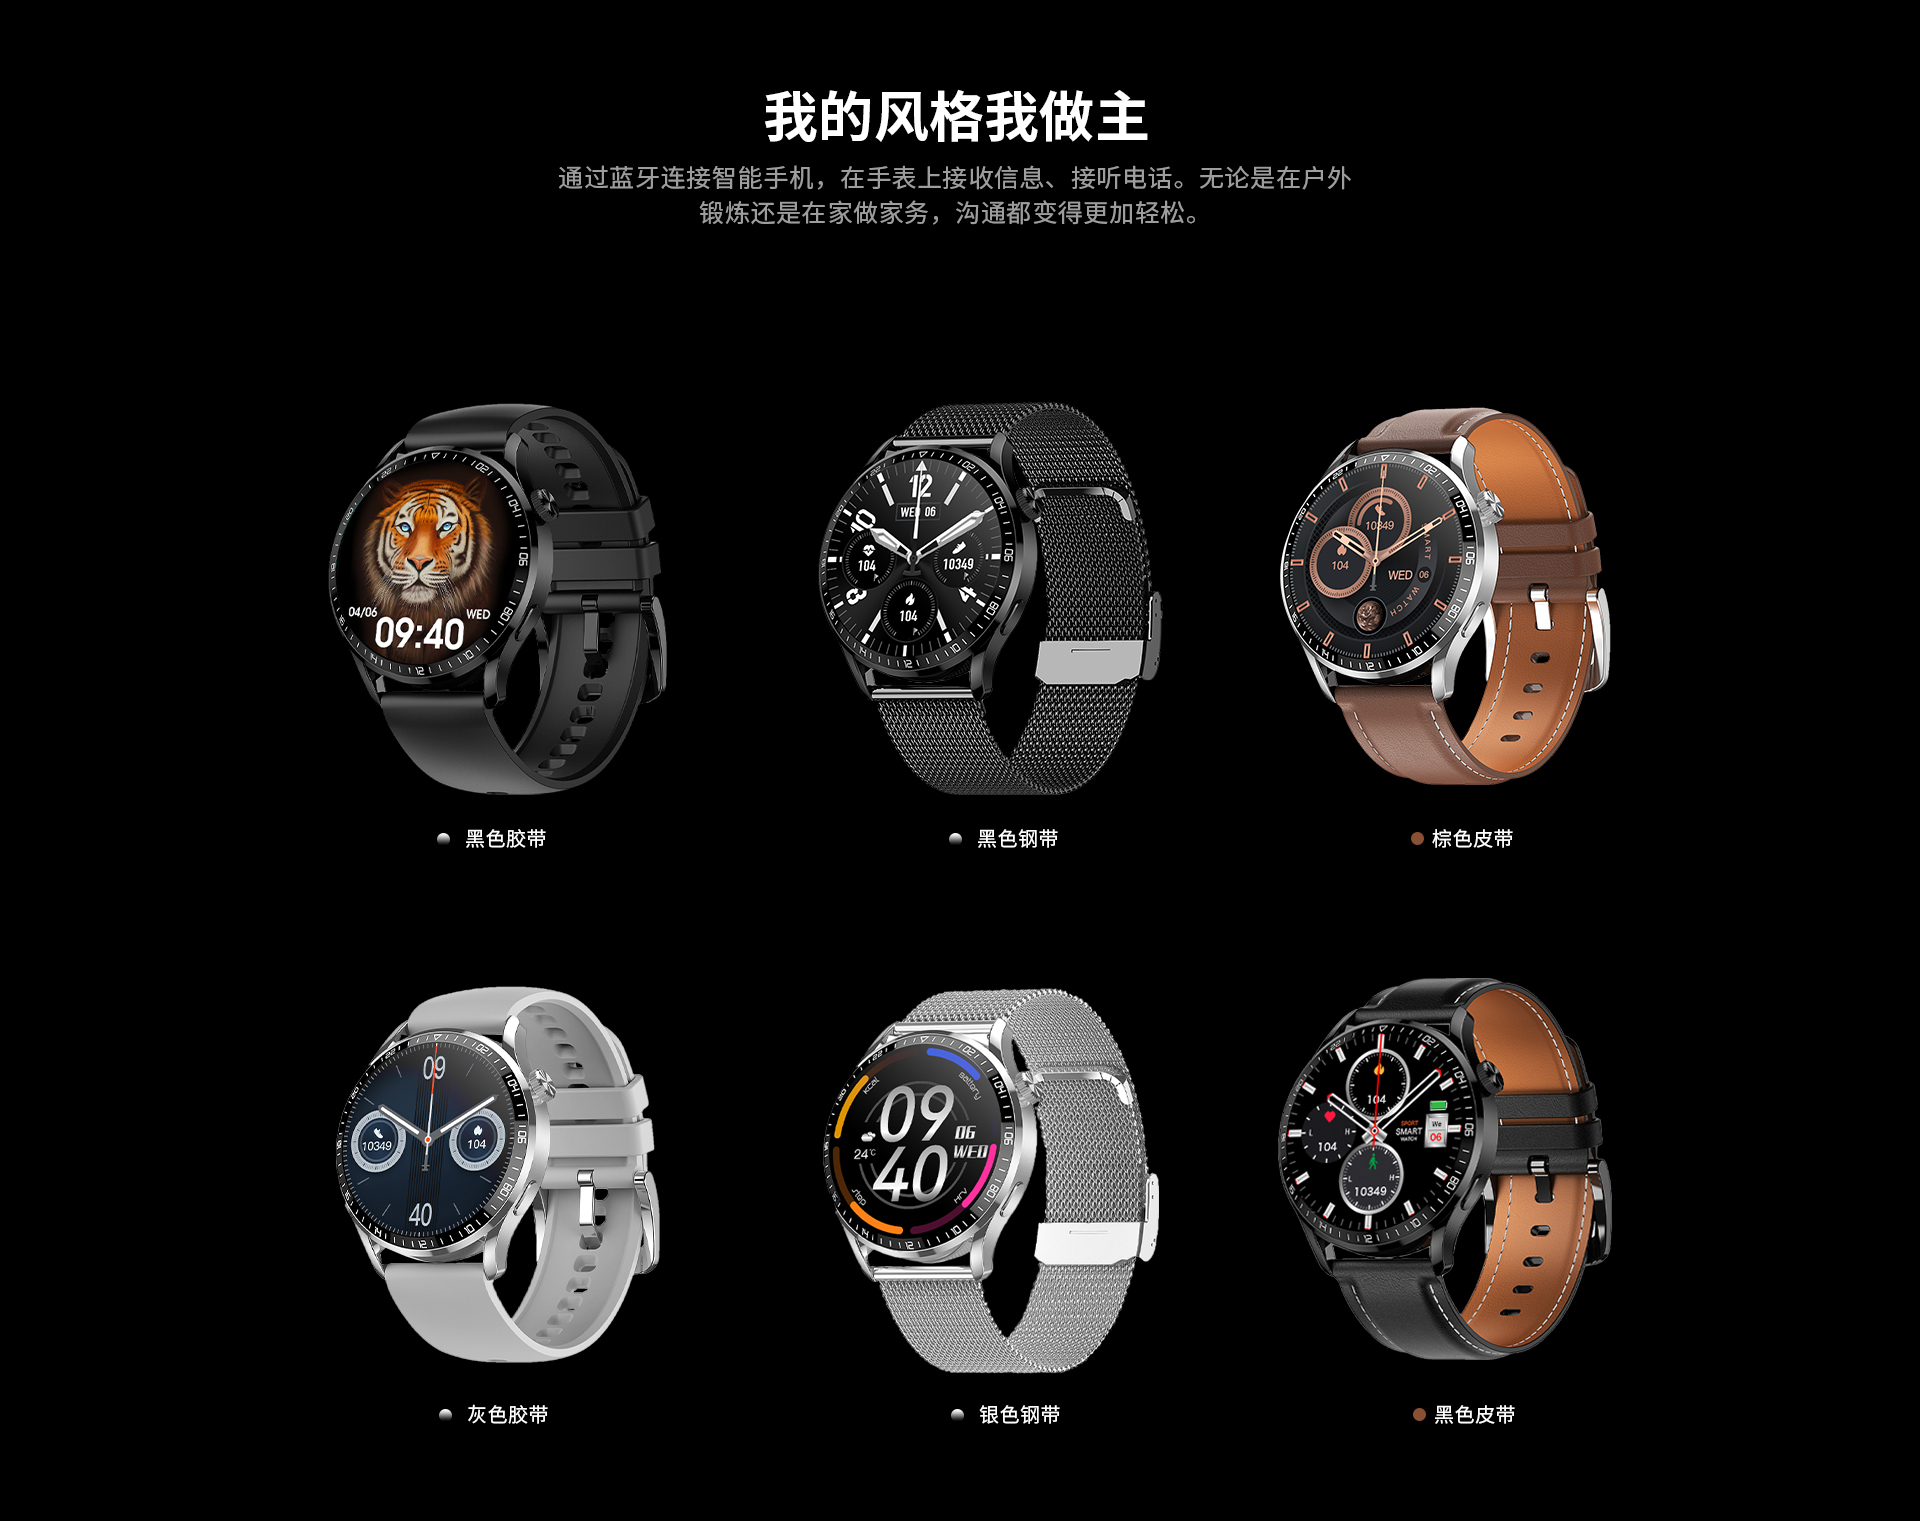 华戴HD2智能手表